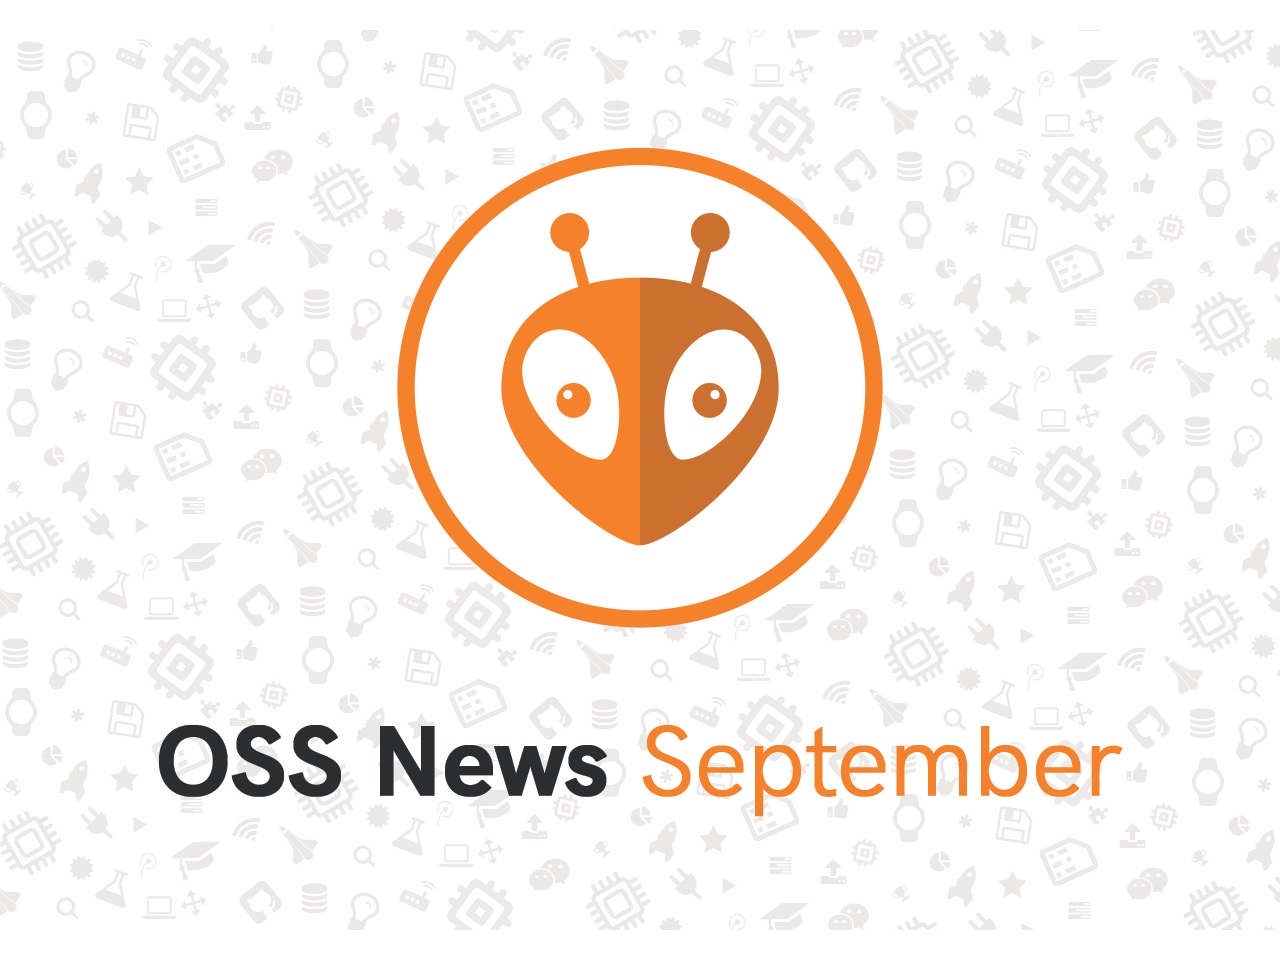 PlatformIO Open Source September Updates